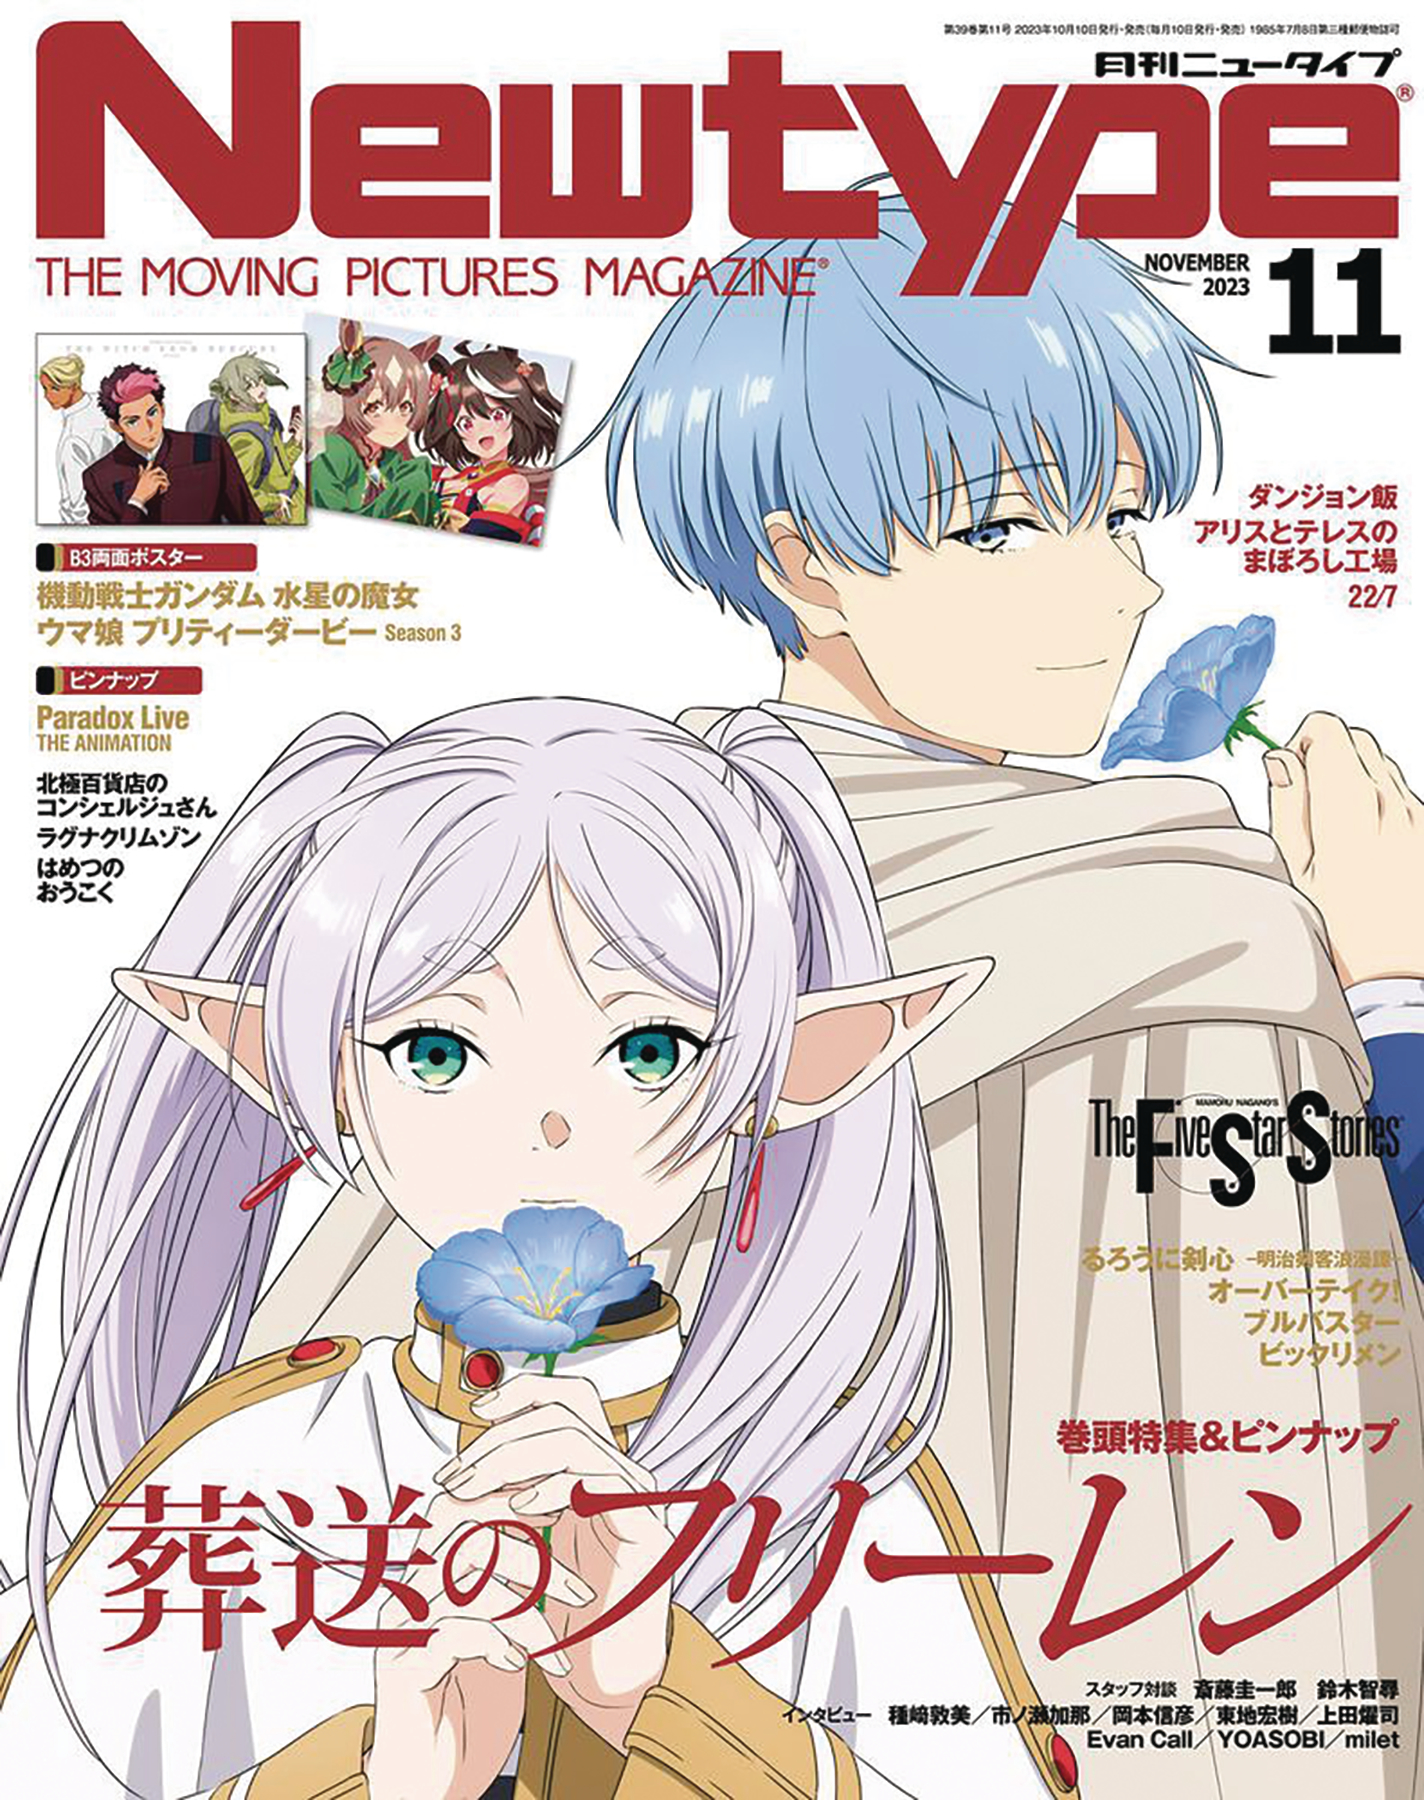 Anime Trending - Newtype Magazine September 2020 Issue... | Facebook